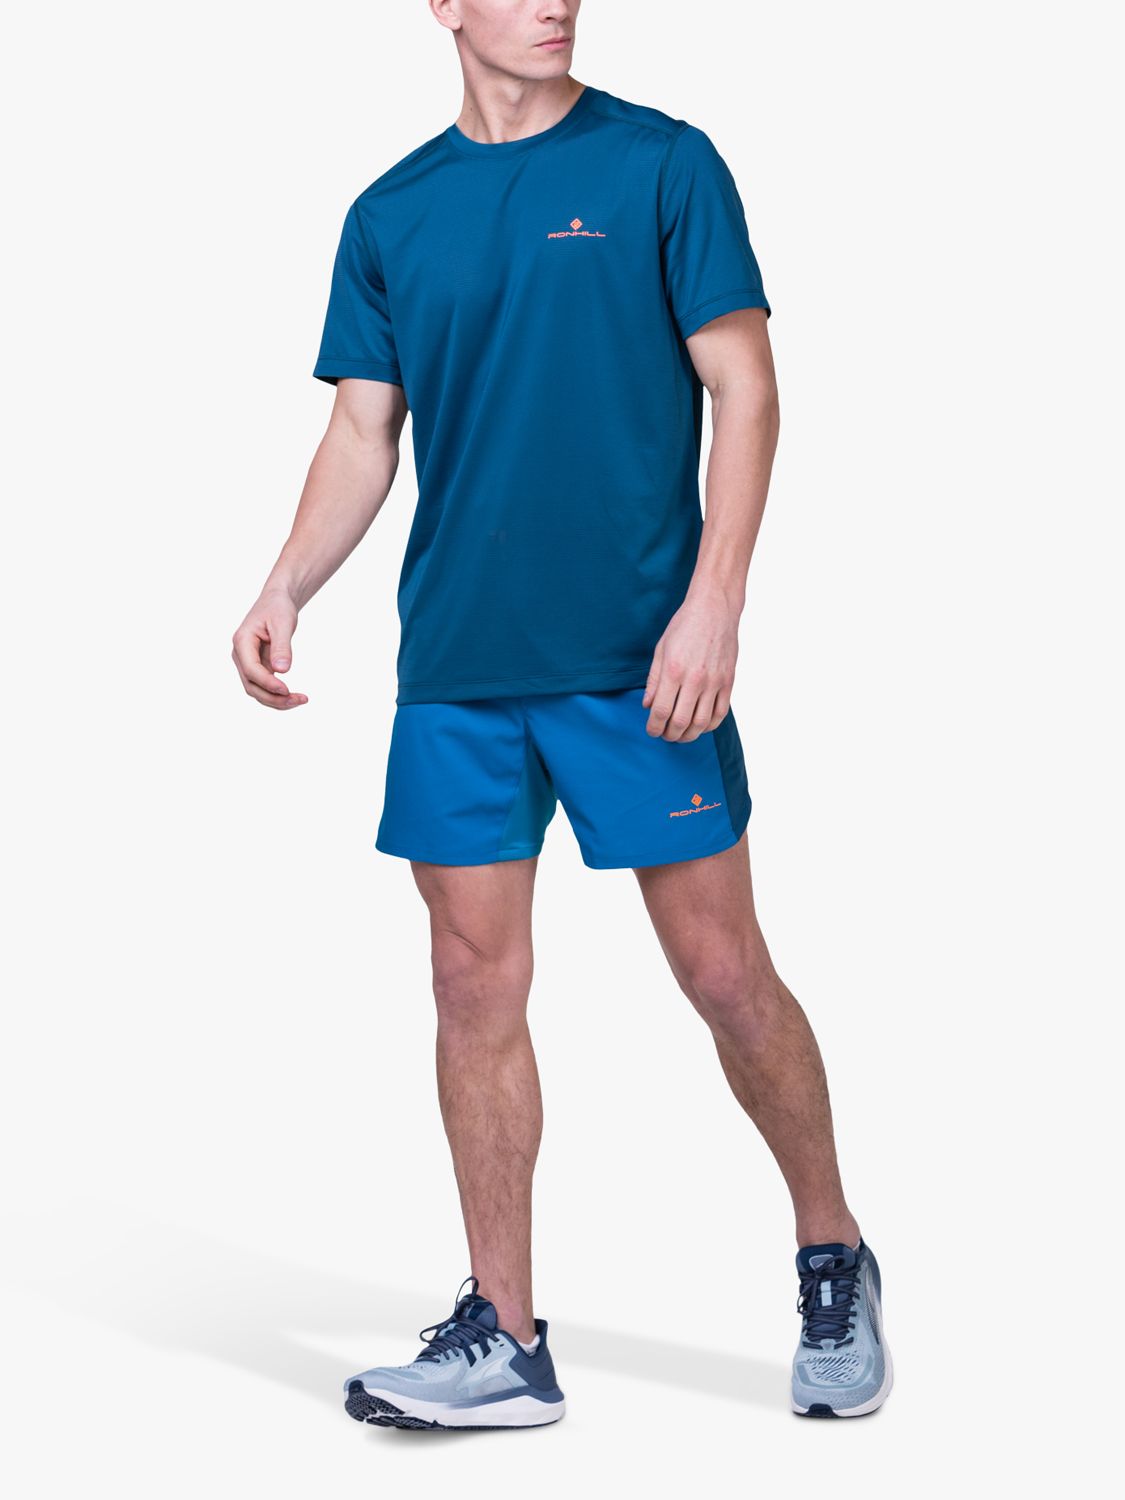 Ronhill Short Sleeve Running T-Shirt, Teal, S